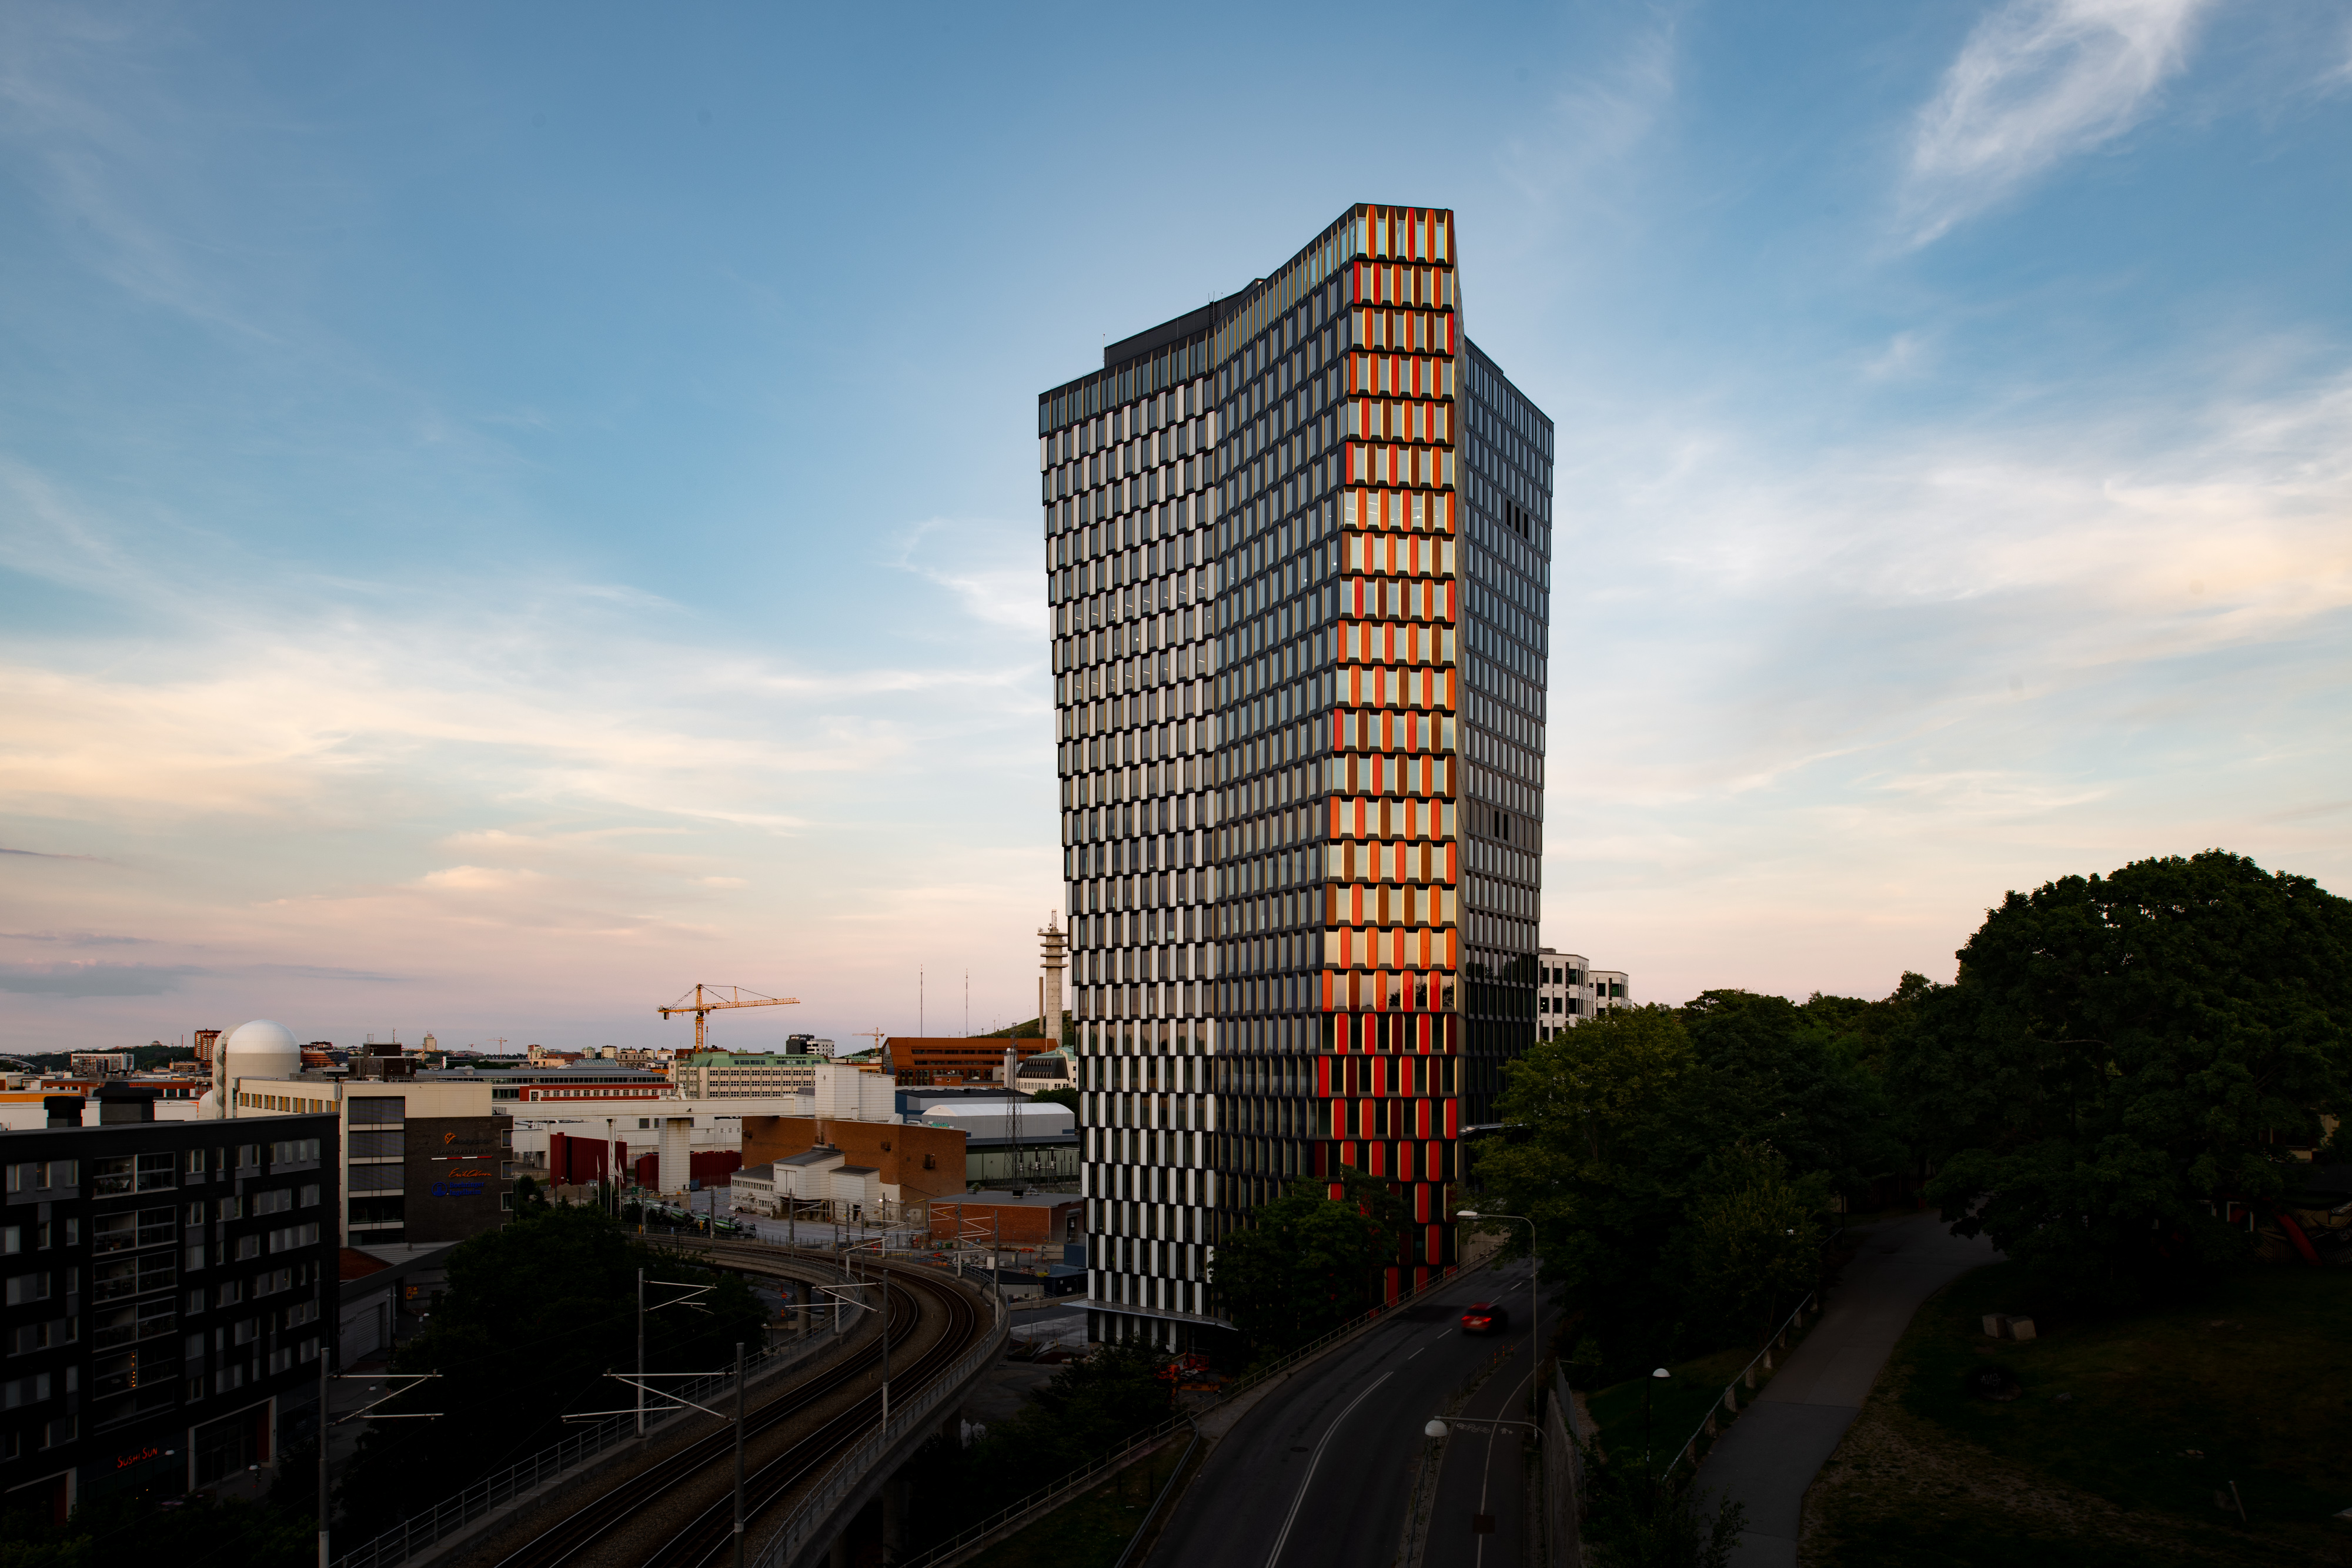 Sthlm 01 - Nowy punkt orientacyjny w Sztokholmie, który uzyskał unikatowy certyfikat zielonego budynku